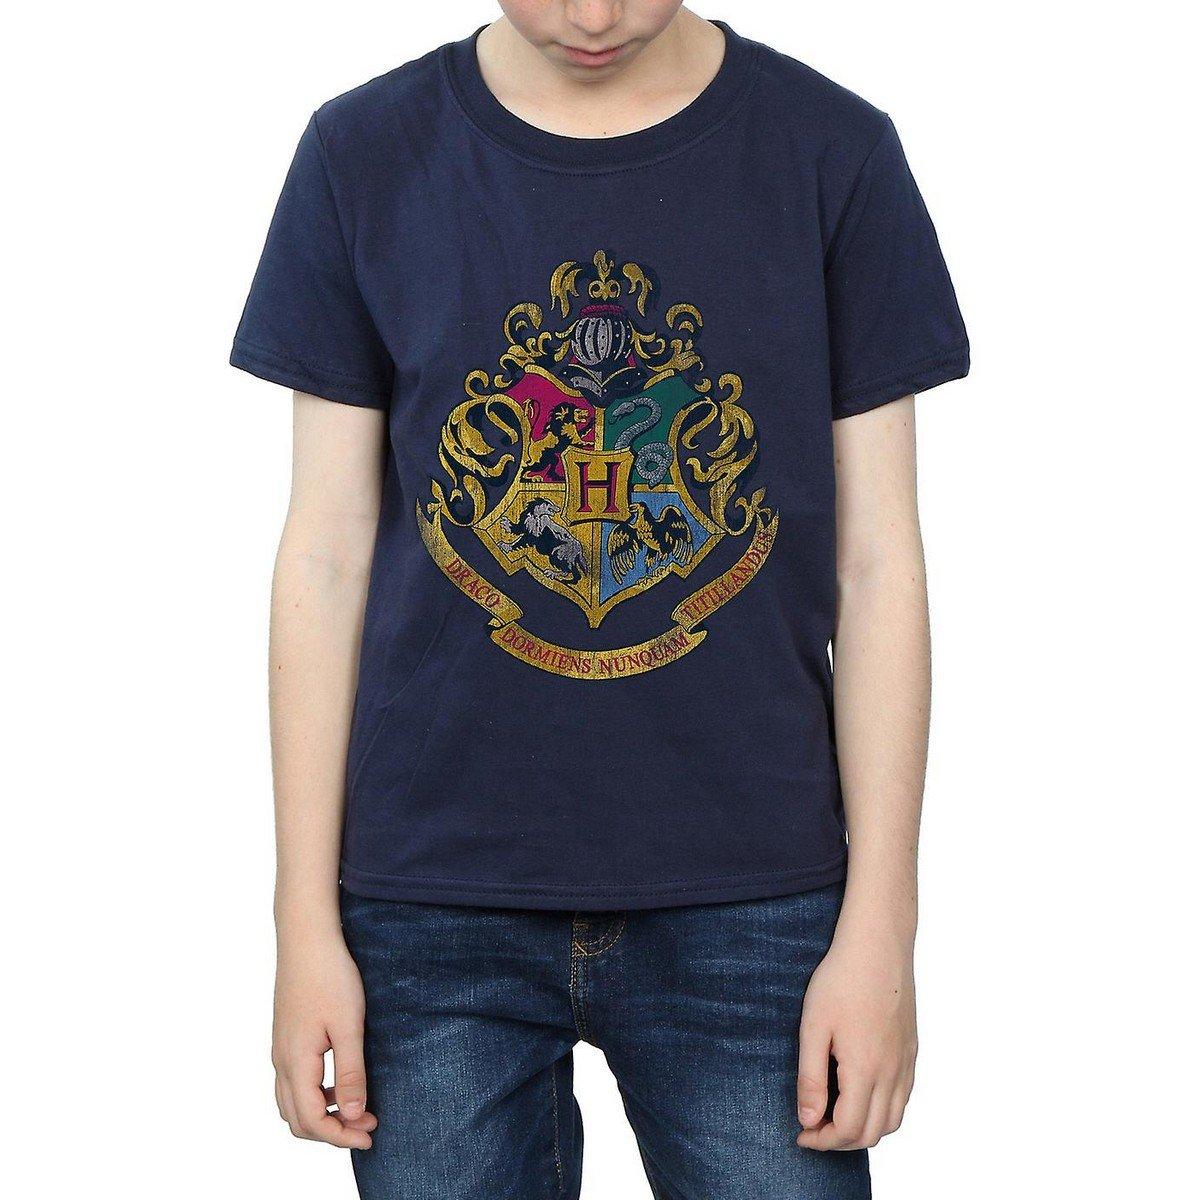 Tshirt Jungen Marine 128 von Harry Potter